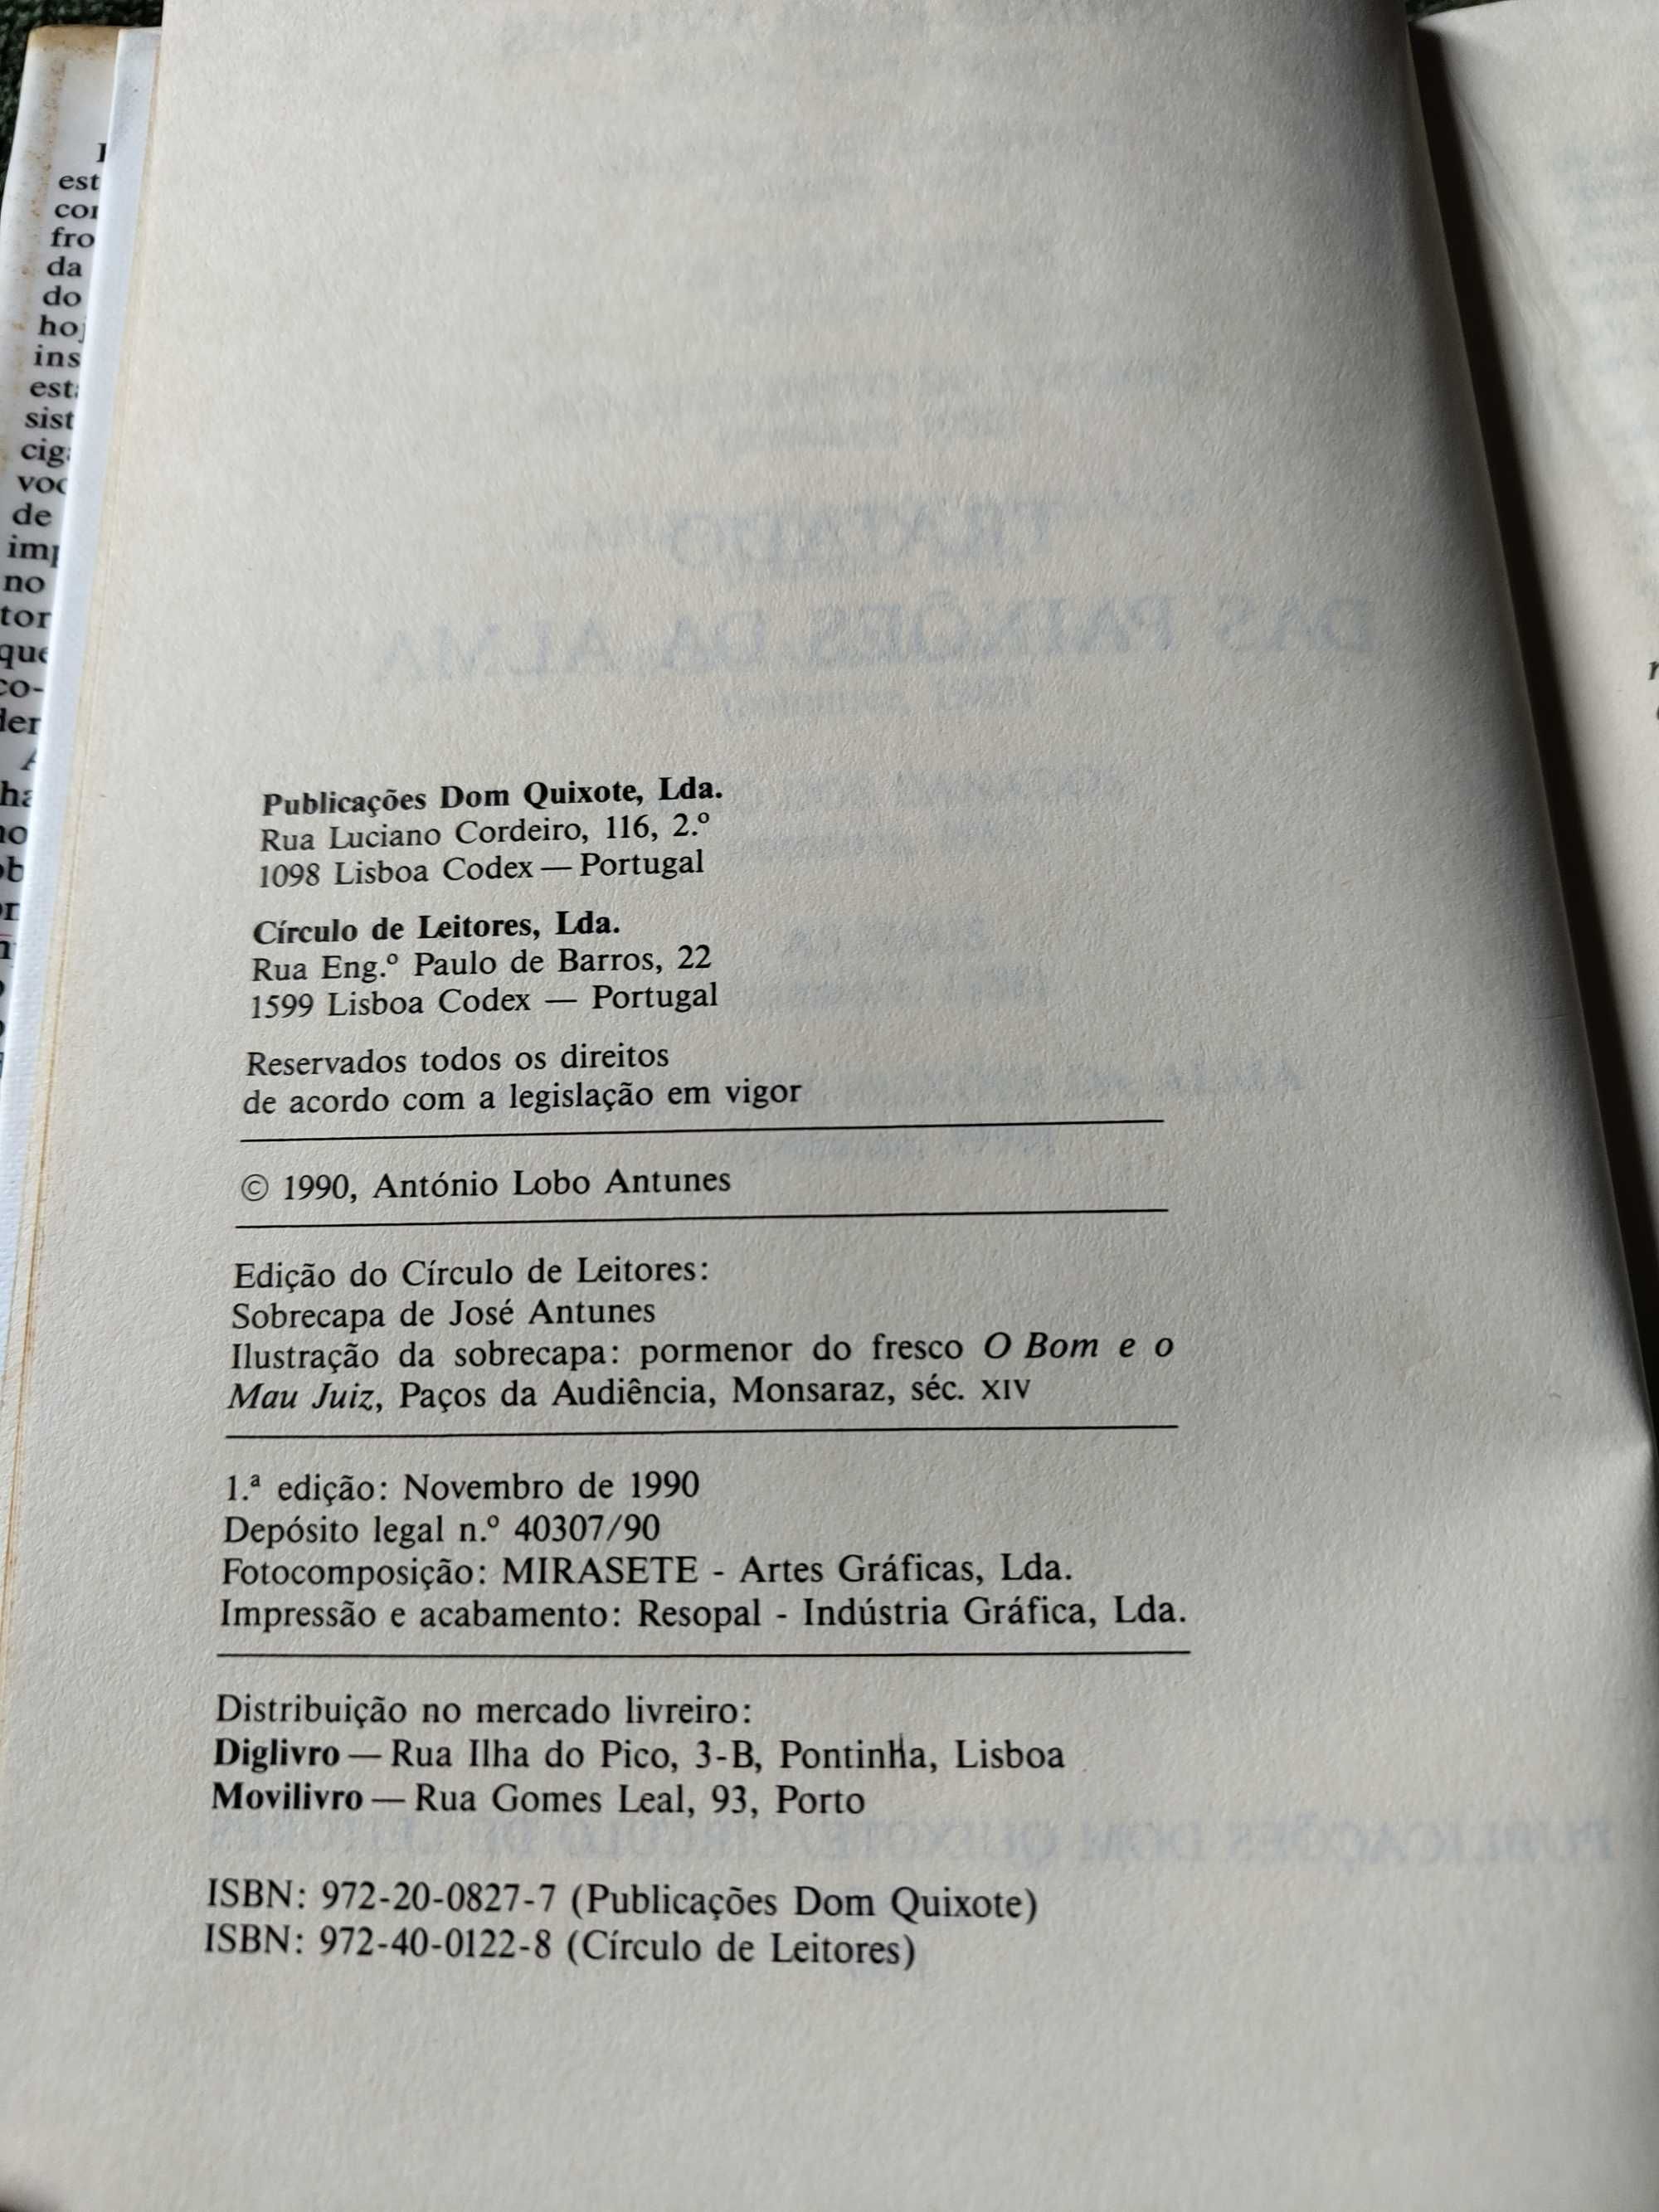 Tratado das Paixoes da Alma de Antonio Lobo Antunes